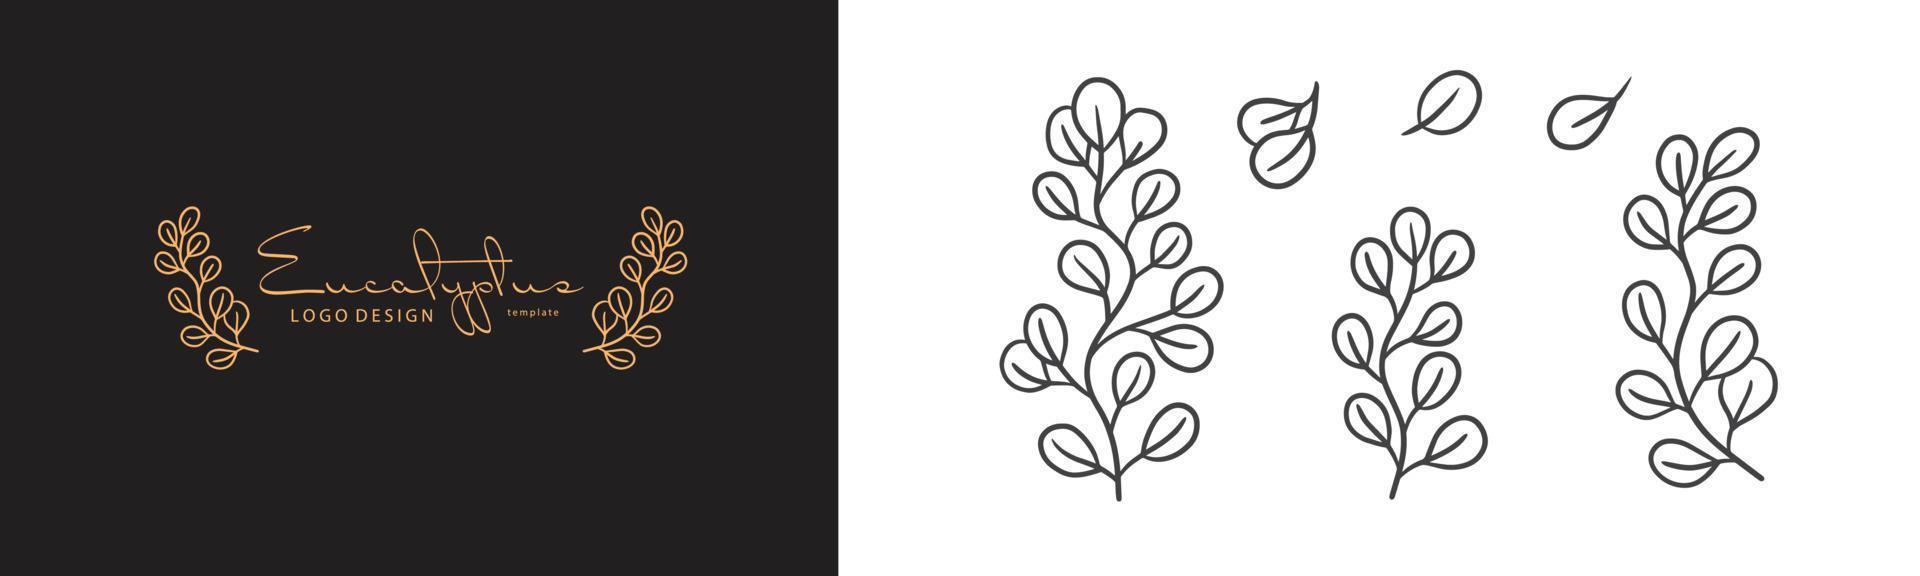 ilustração de planta de eucalipto orgânico e modelo de logotipo de crachás. rótulos de selo minimalista vintage para tag com folhas de eucalipto isoladas. conjunto de sinal natural desenhado à mão para design rústico simples. vetor